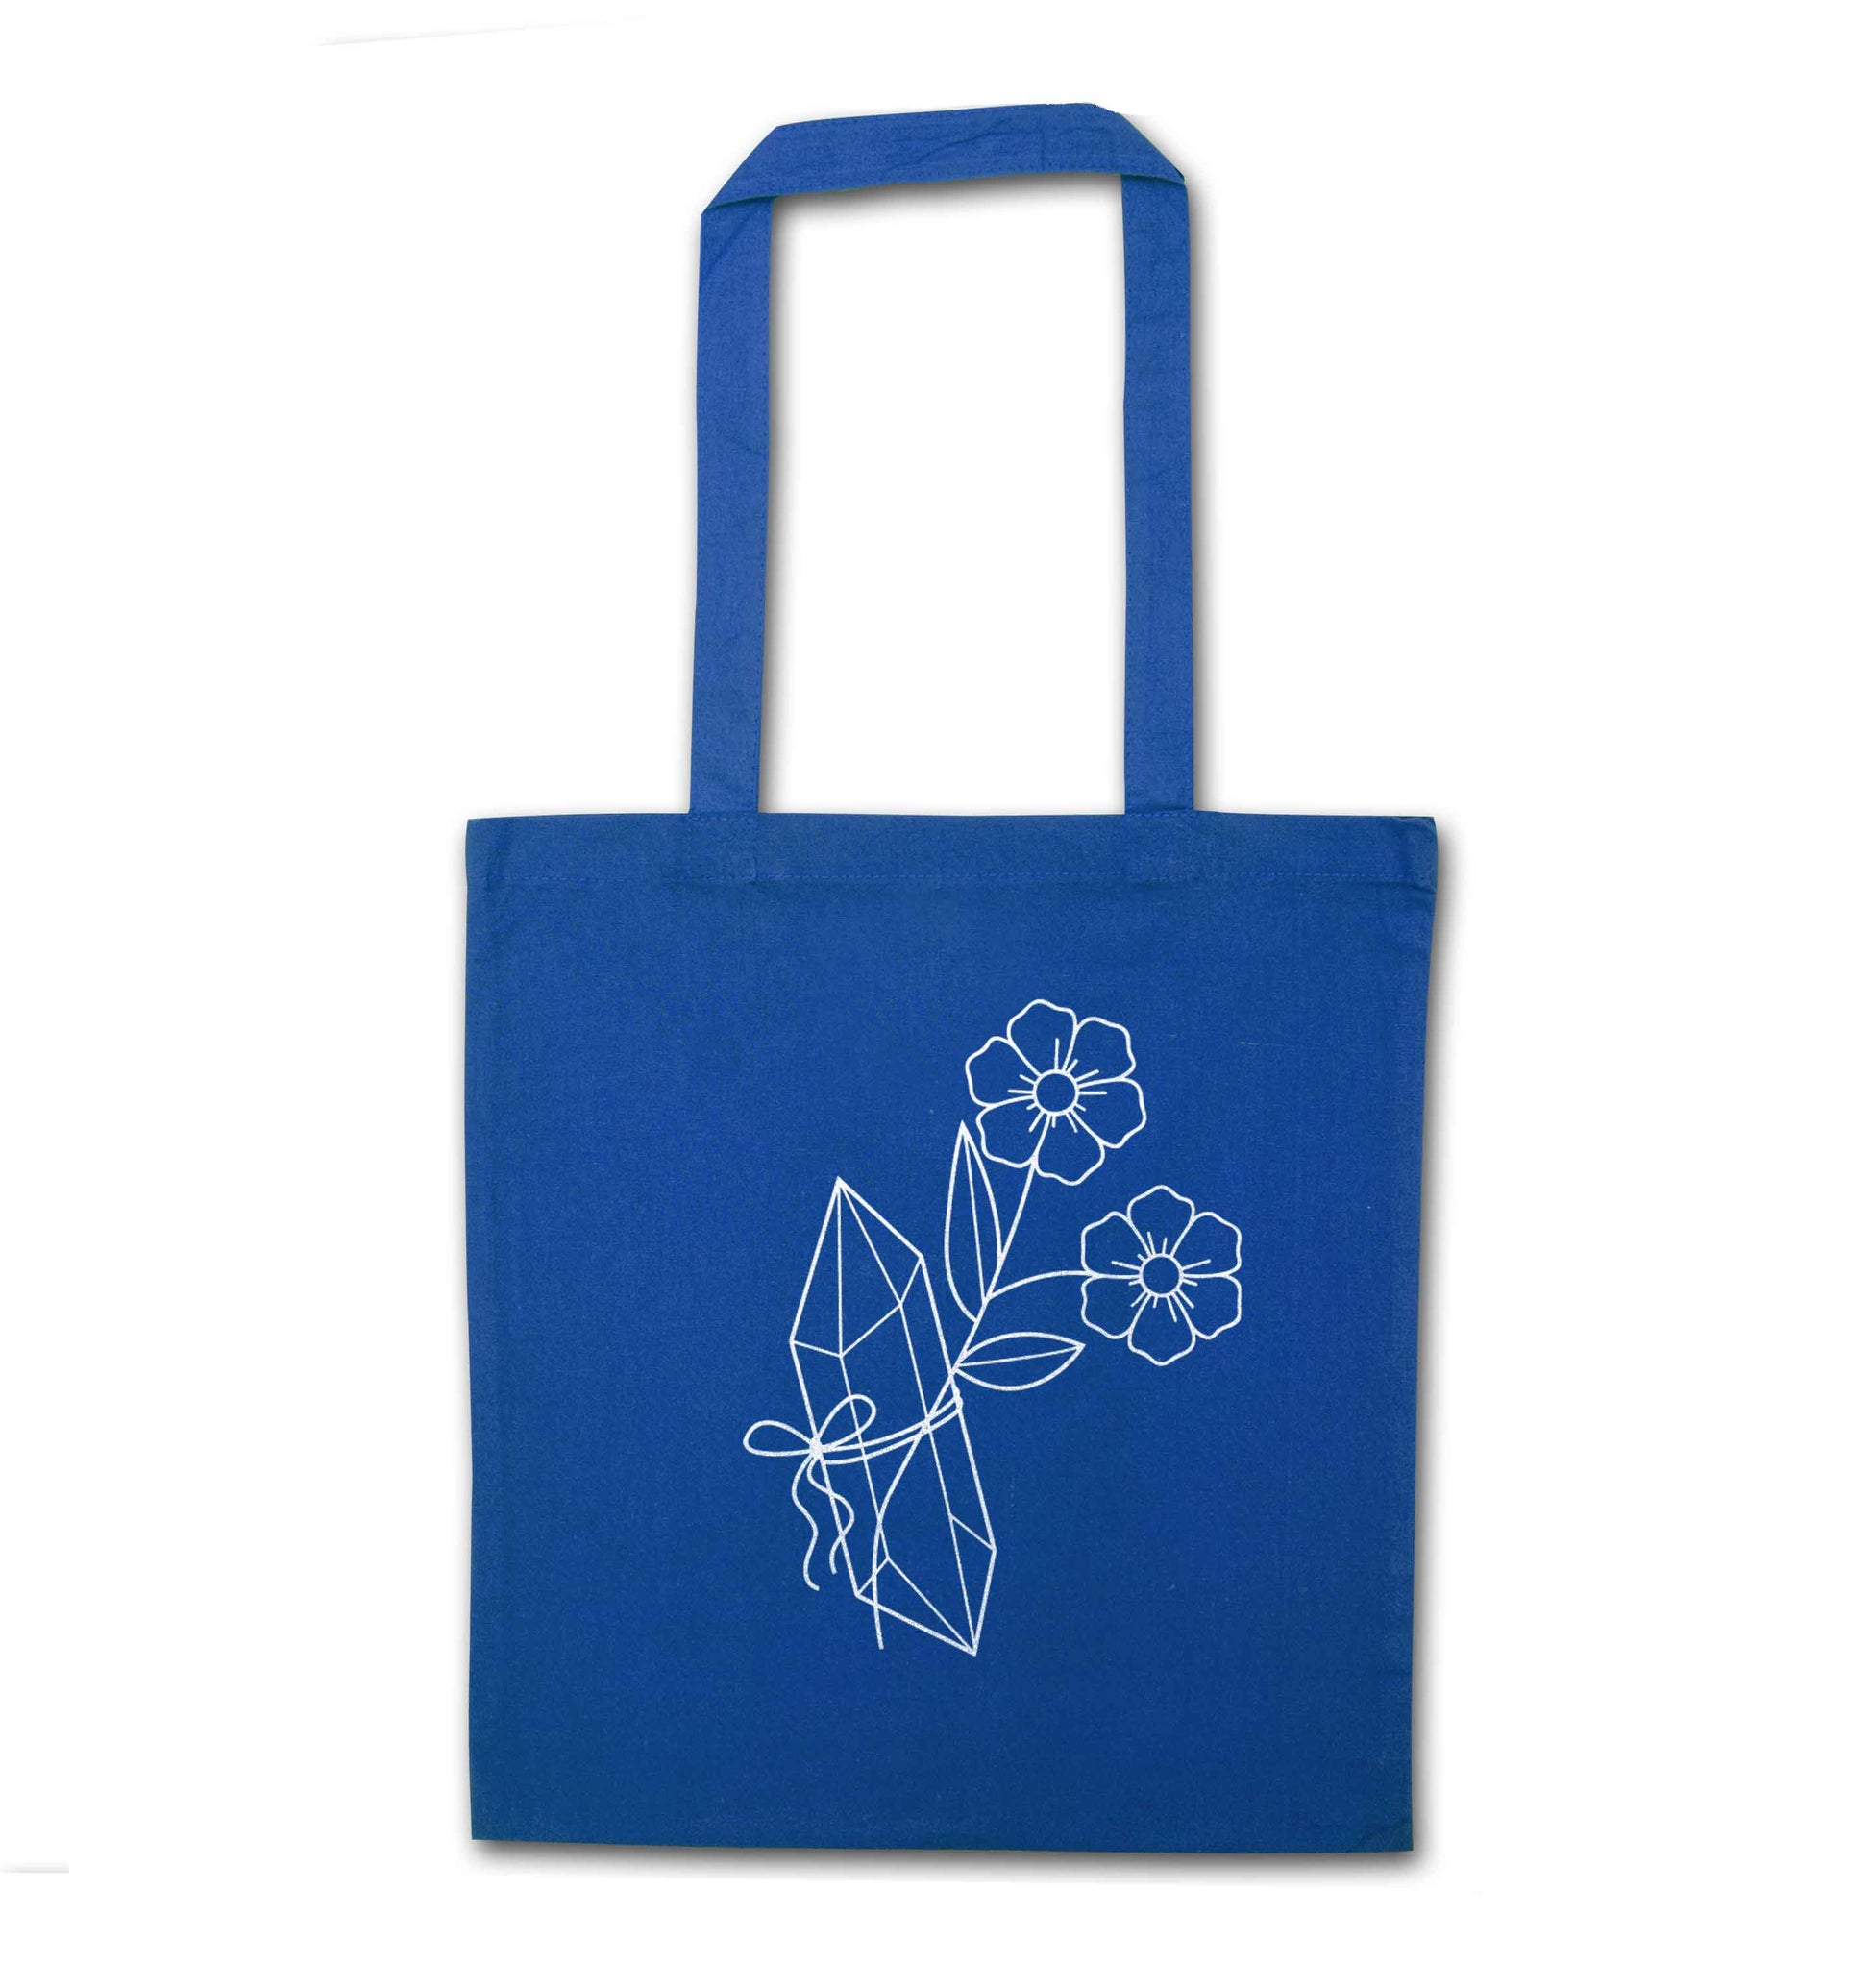 Crystal flower illustration blue tote bag